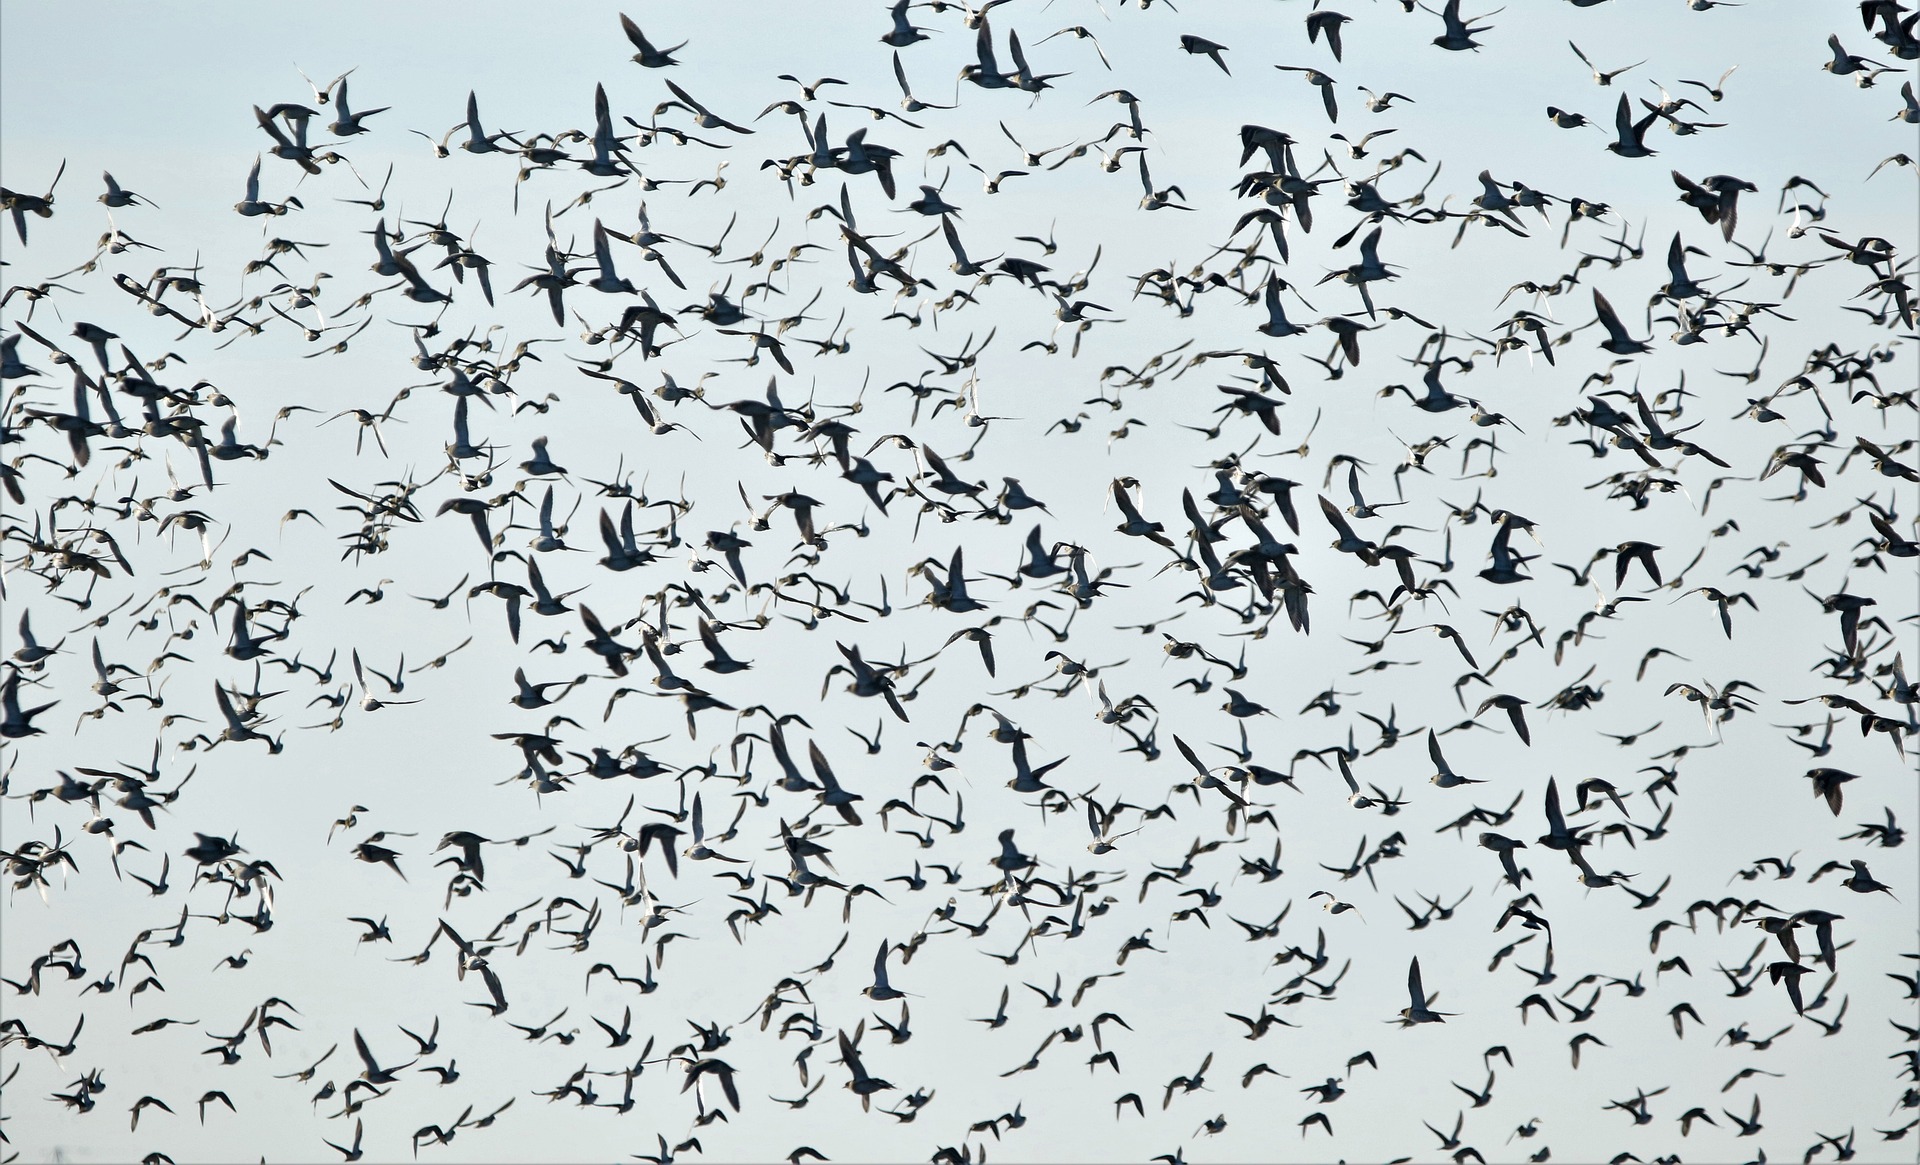 Jahreshauptversammlung Vogelschwarm | Bildrechte (C) DavidReed, Pixabay.de